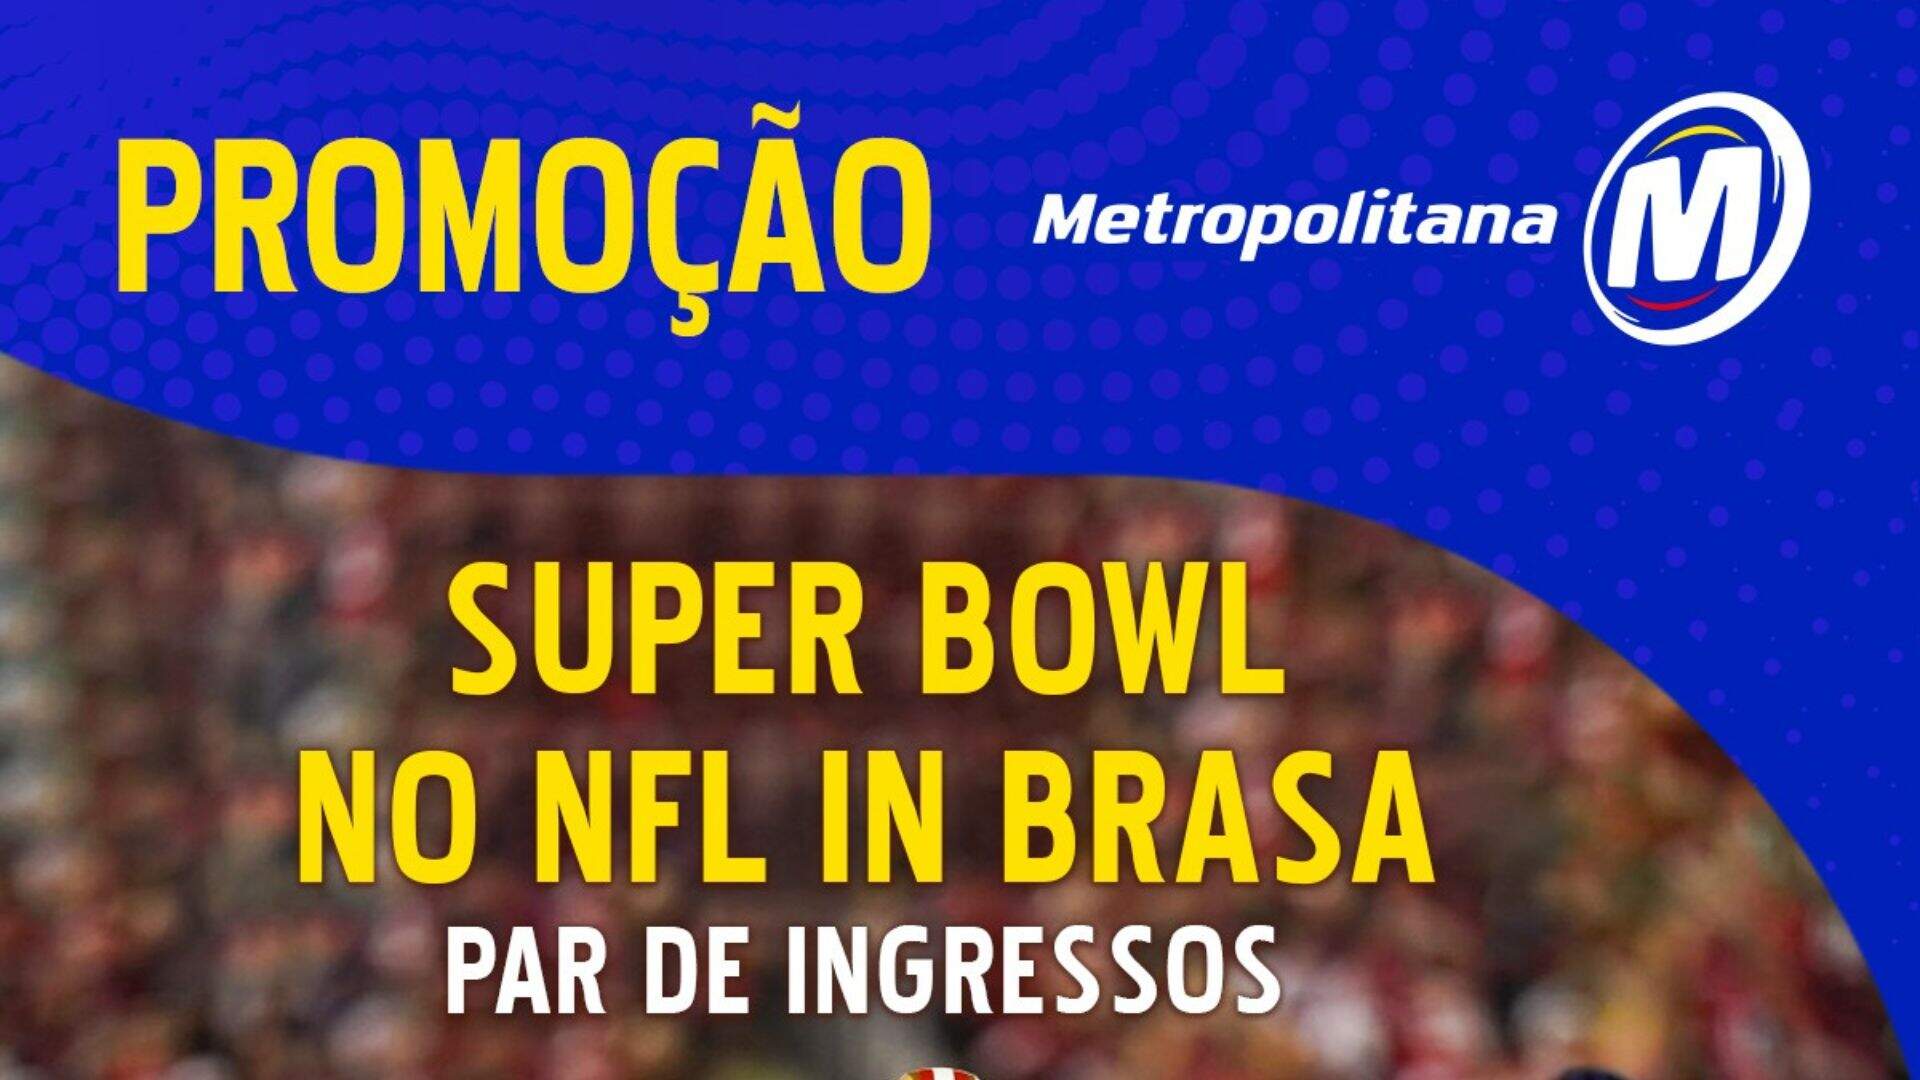 [ENCERRADA] Promoção: SUPER BOWL NO NFL IN BRASA É NA METROPOLITANA